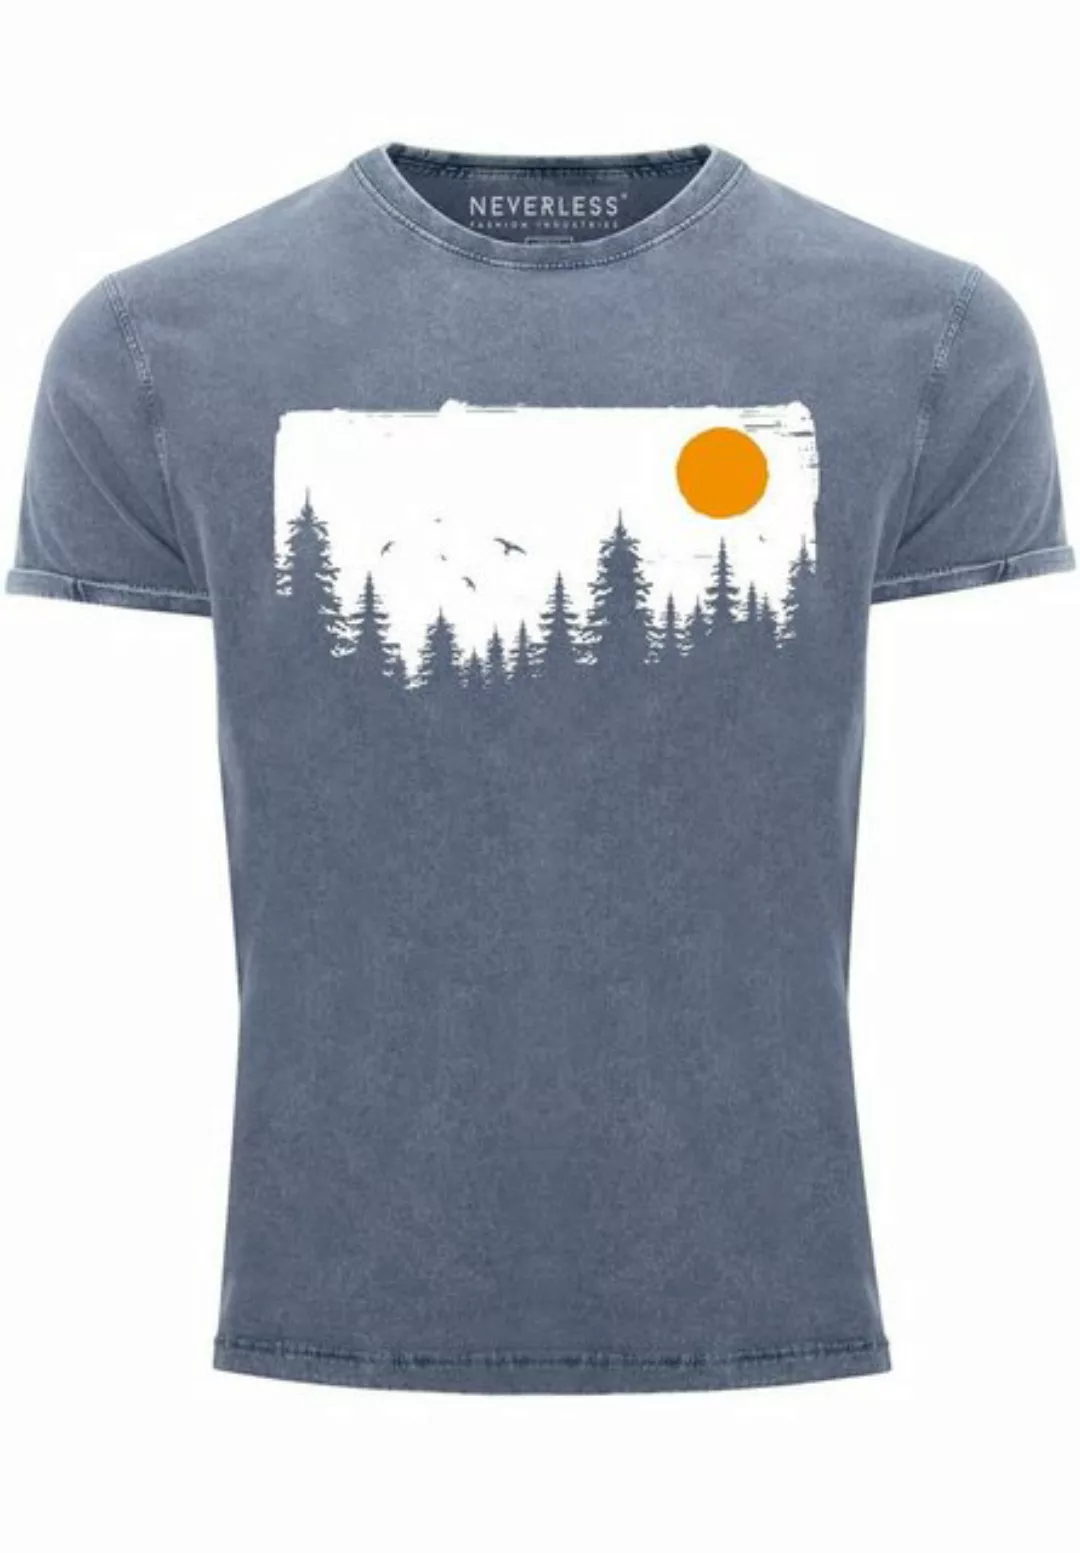 Neverless Print-Shirt Herren Vintage Shirt Wald Bäume Outdoor Adventure Abe günstig online kaufen